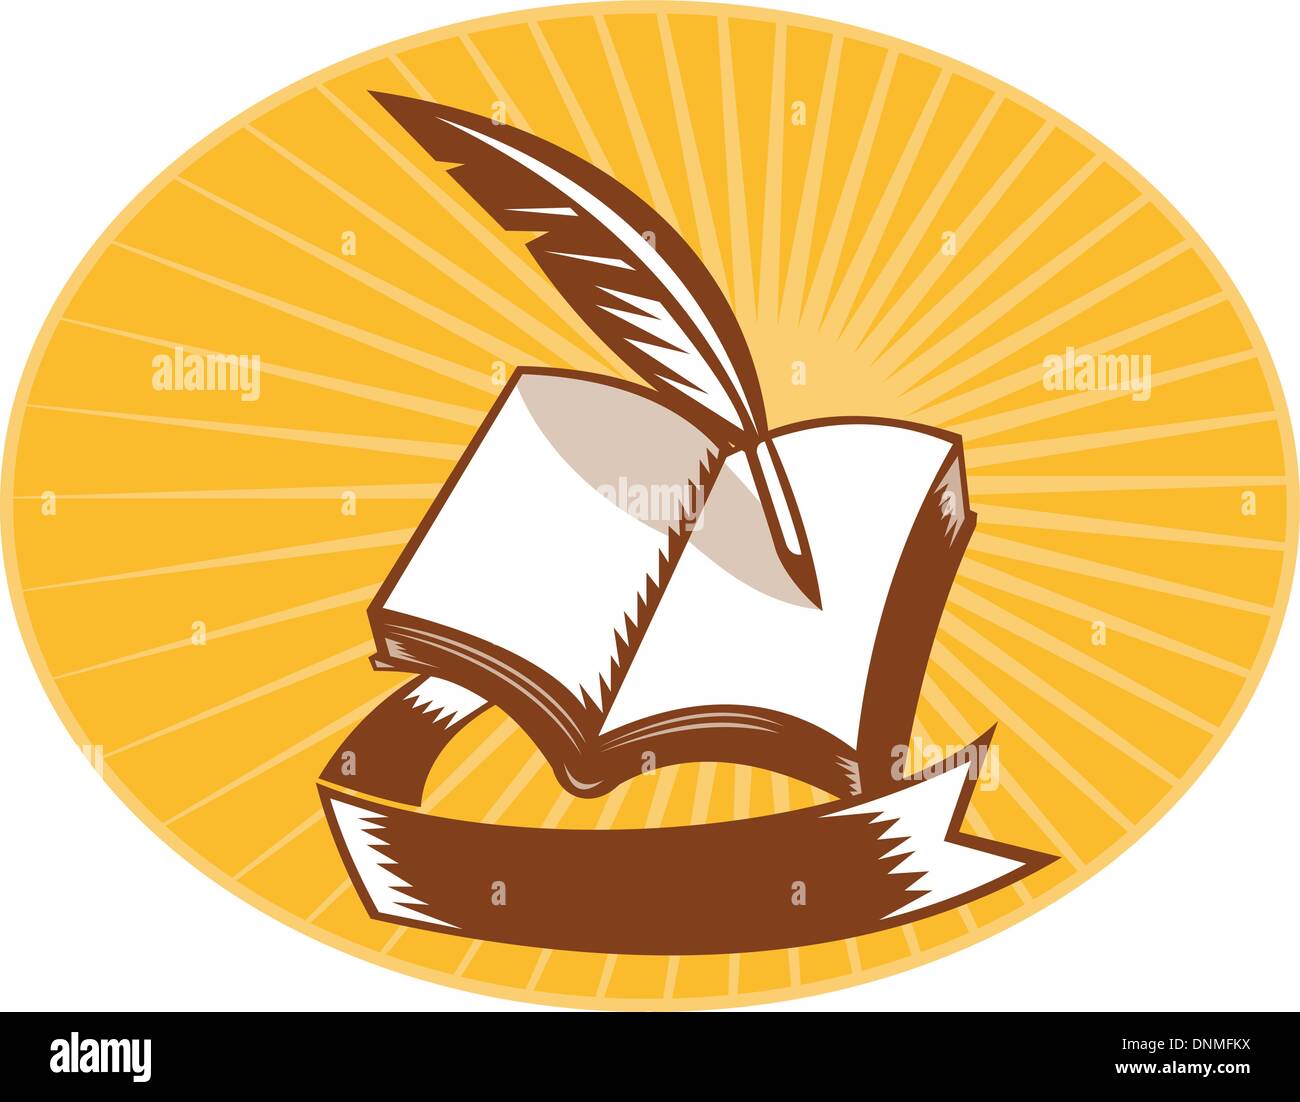 Illustrazione di un libro con la penna del cappello e insieme di scorrimento all'interno di uno ovale con sunburst in fatto di sfondo in xilografia stile. Illustrazione Vettoriale